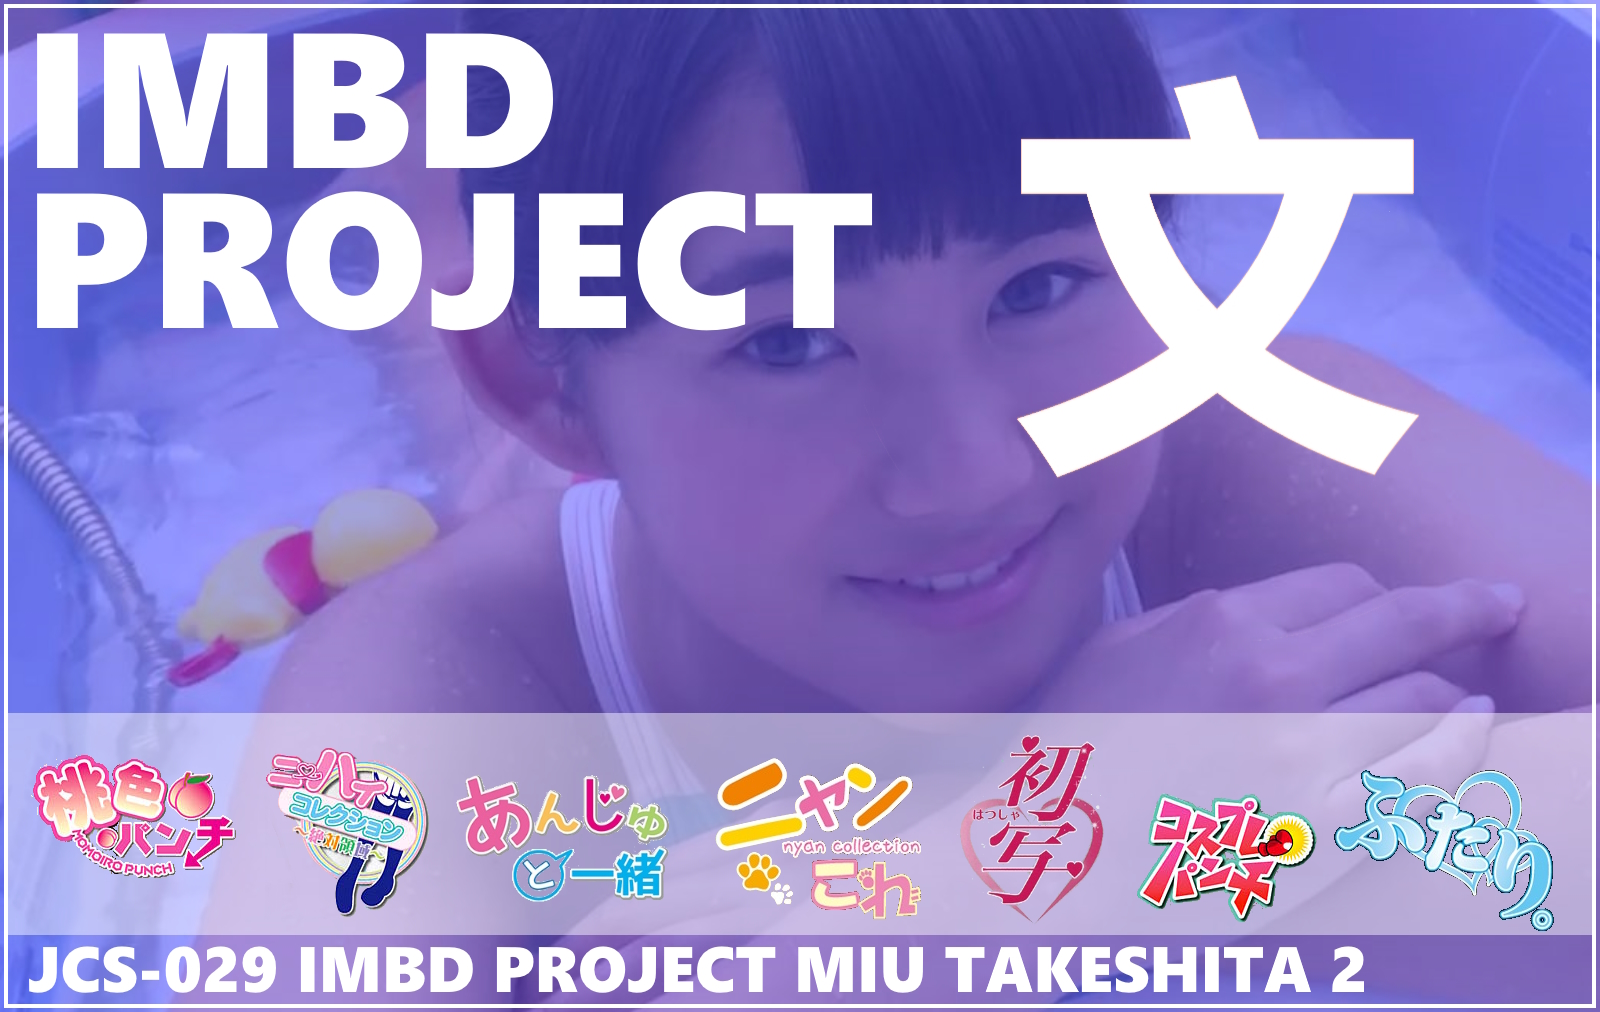 JCS-029 IMBD Project Miu Takeshita 2